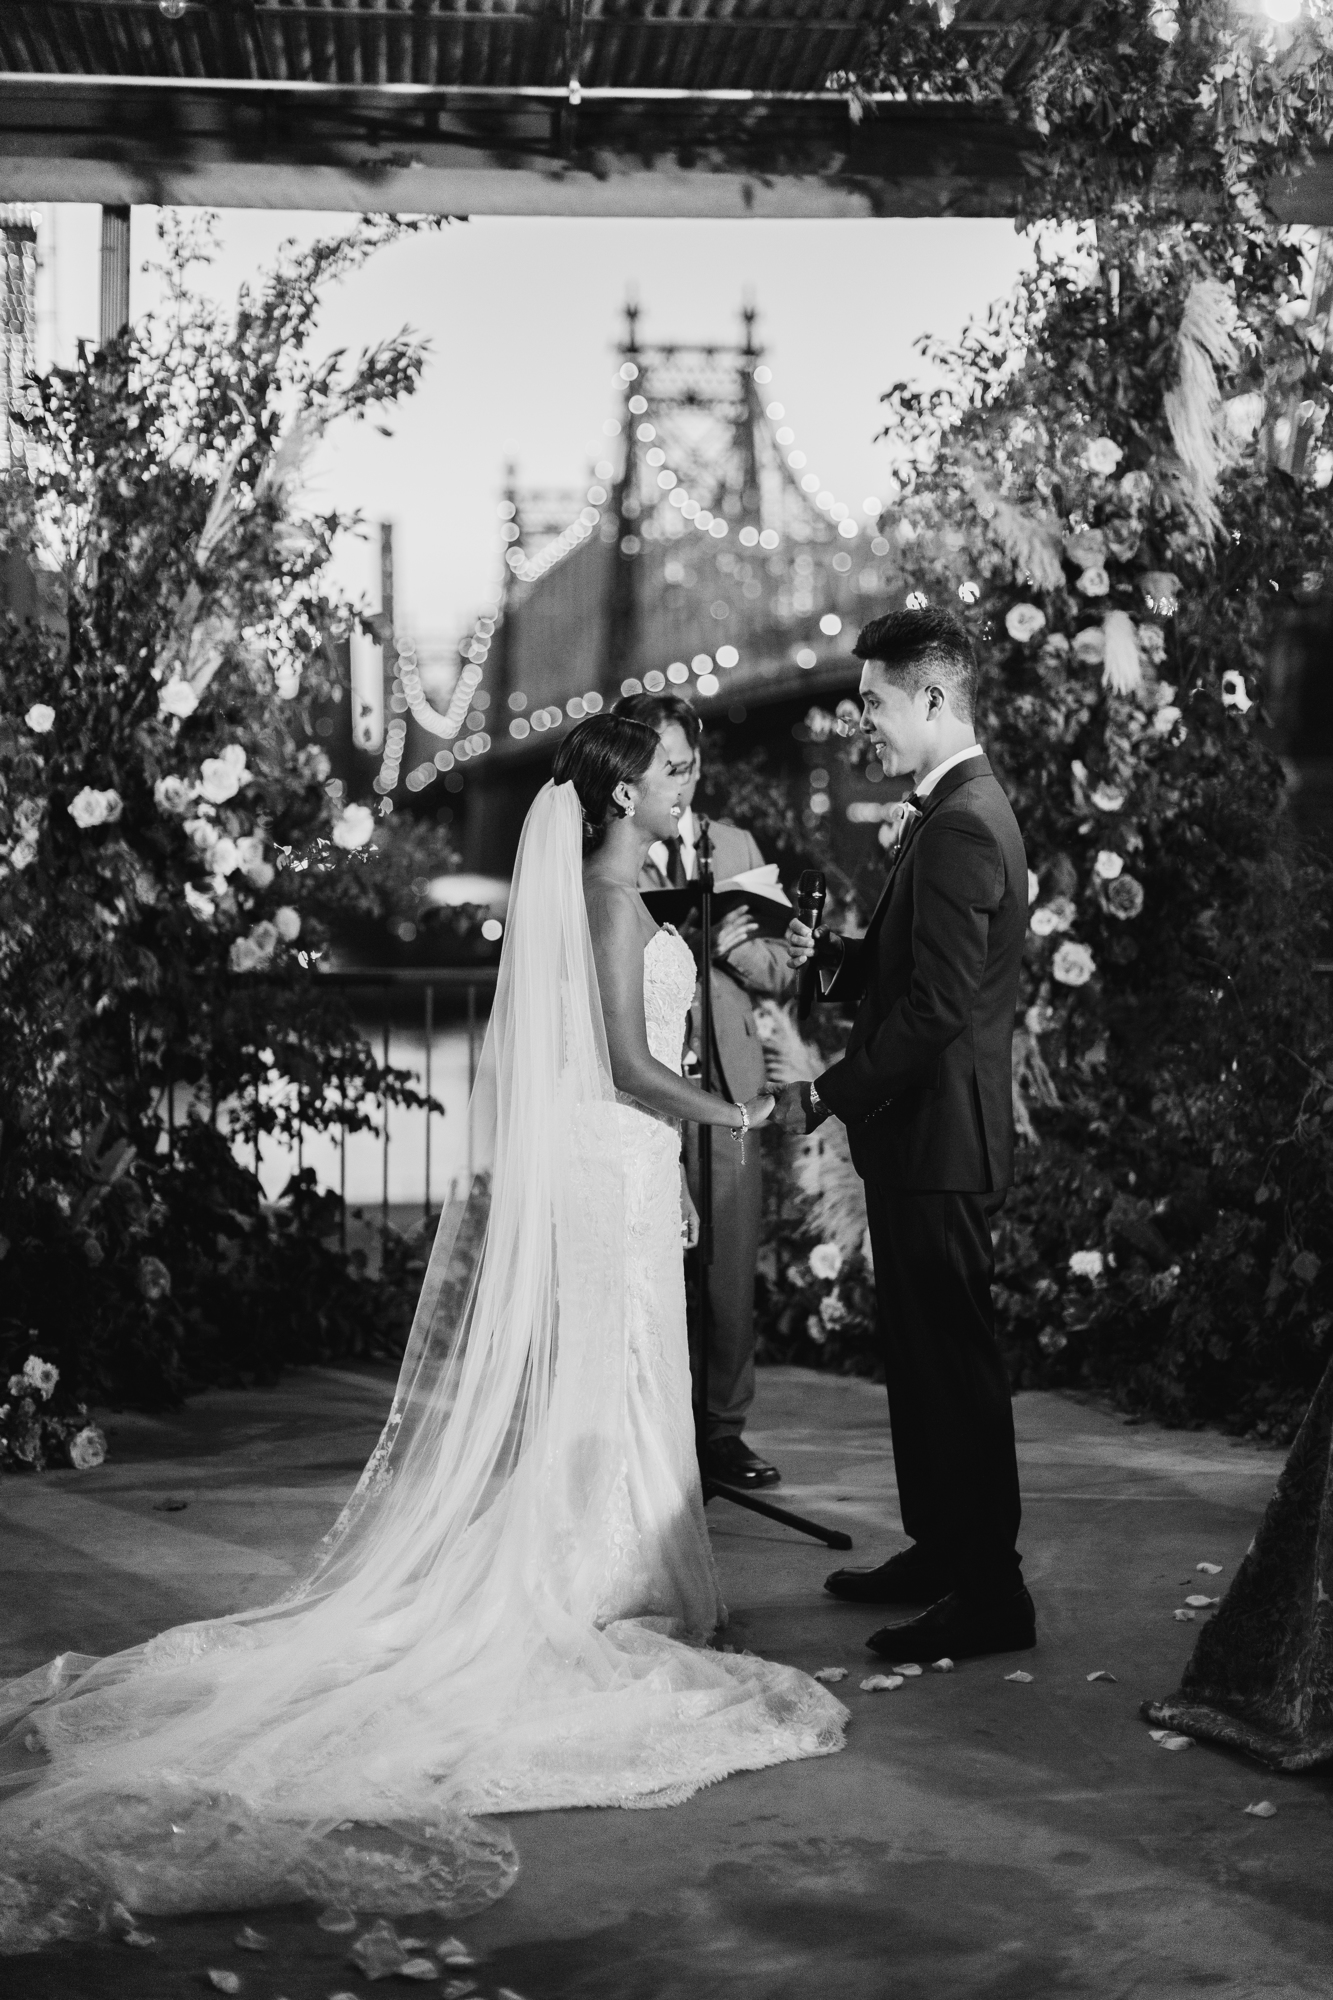 Ceremony at Ravel Hotel wedding